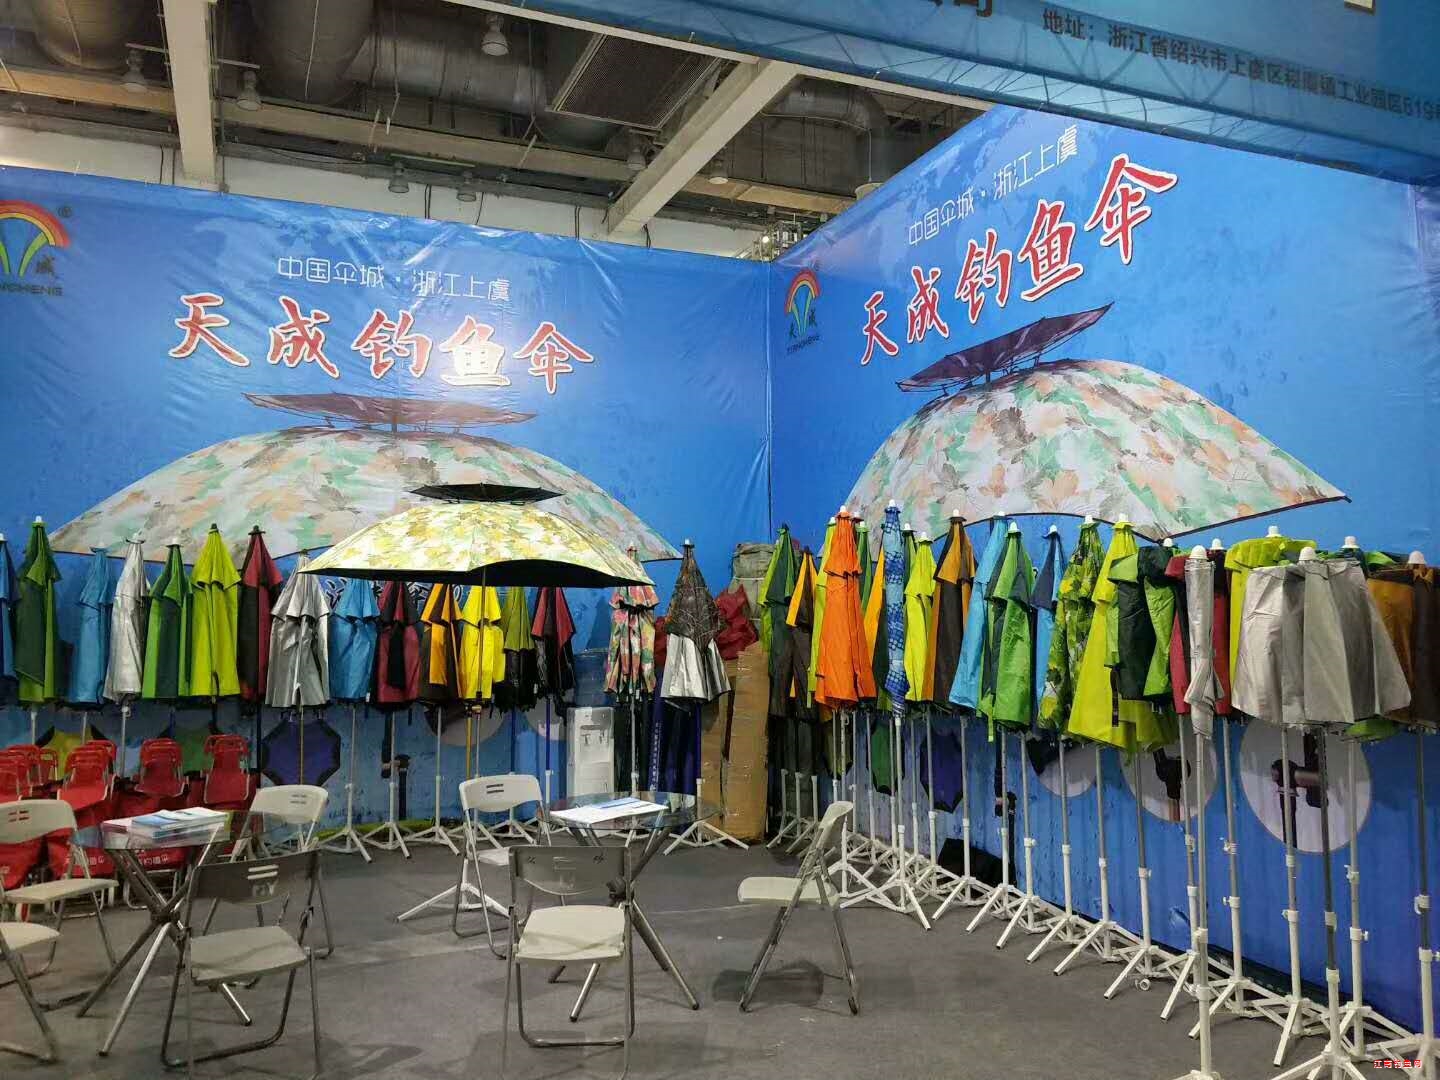 苏州上花2018年夏季渔具展览会:天成钓鱼伞欢